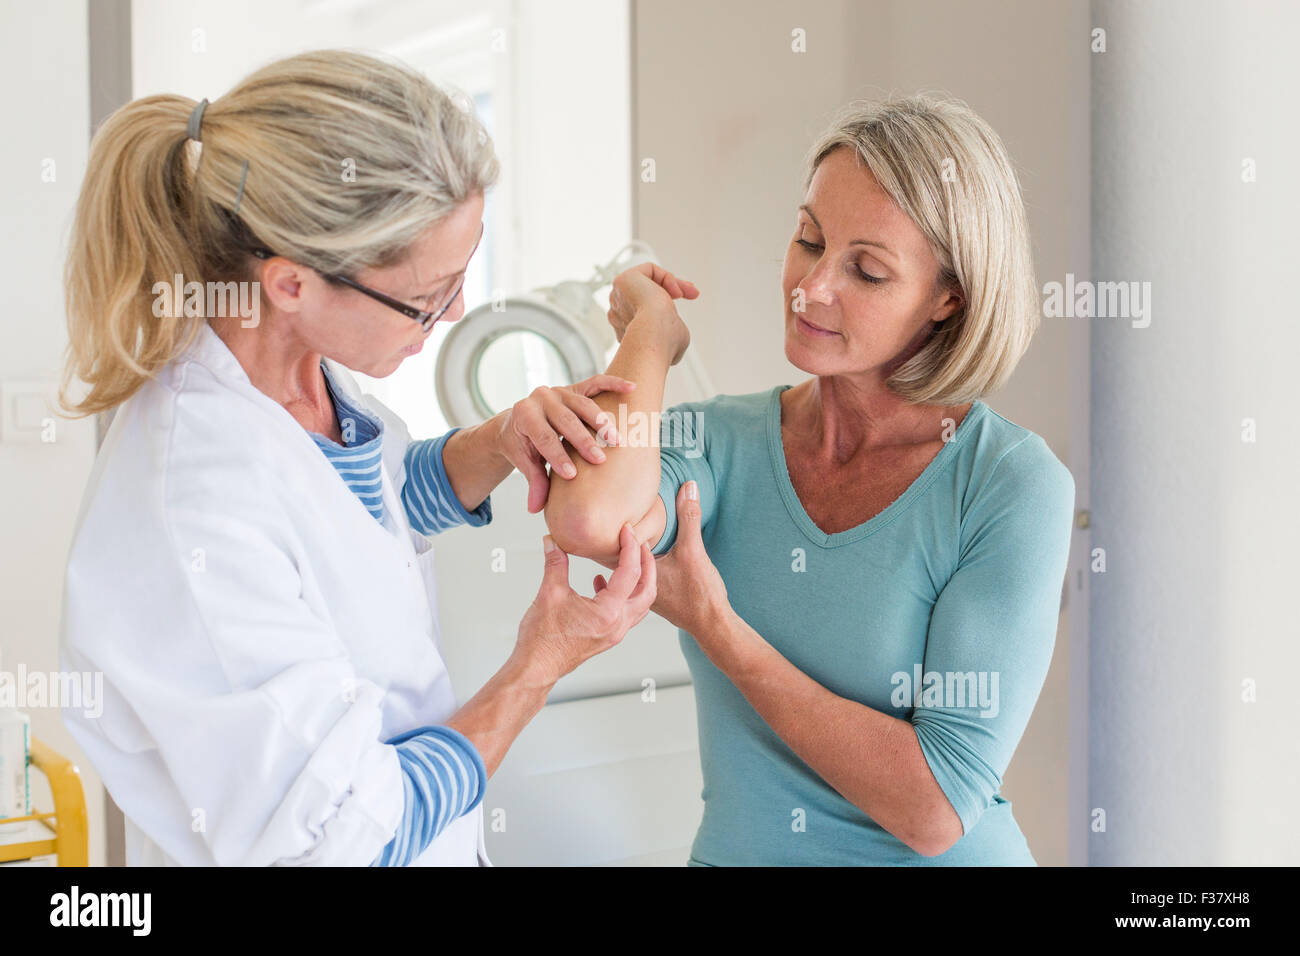 Arzt untersucht die Haut einer Frau. Stockfoto